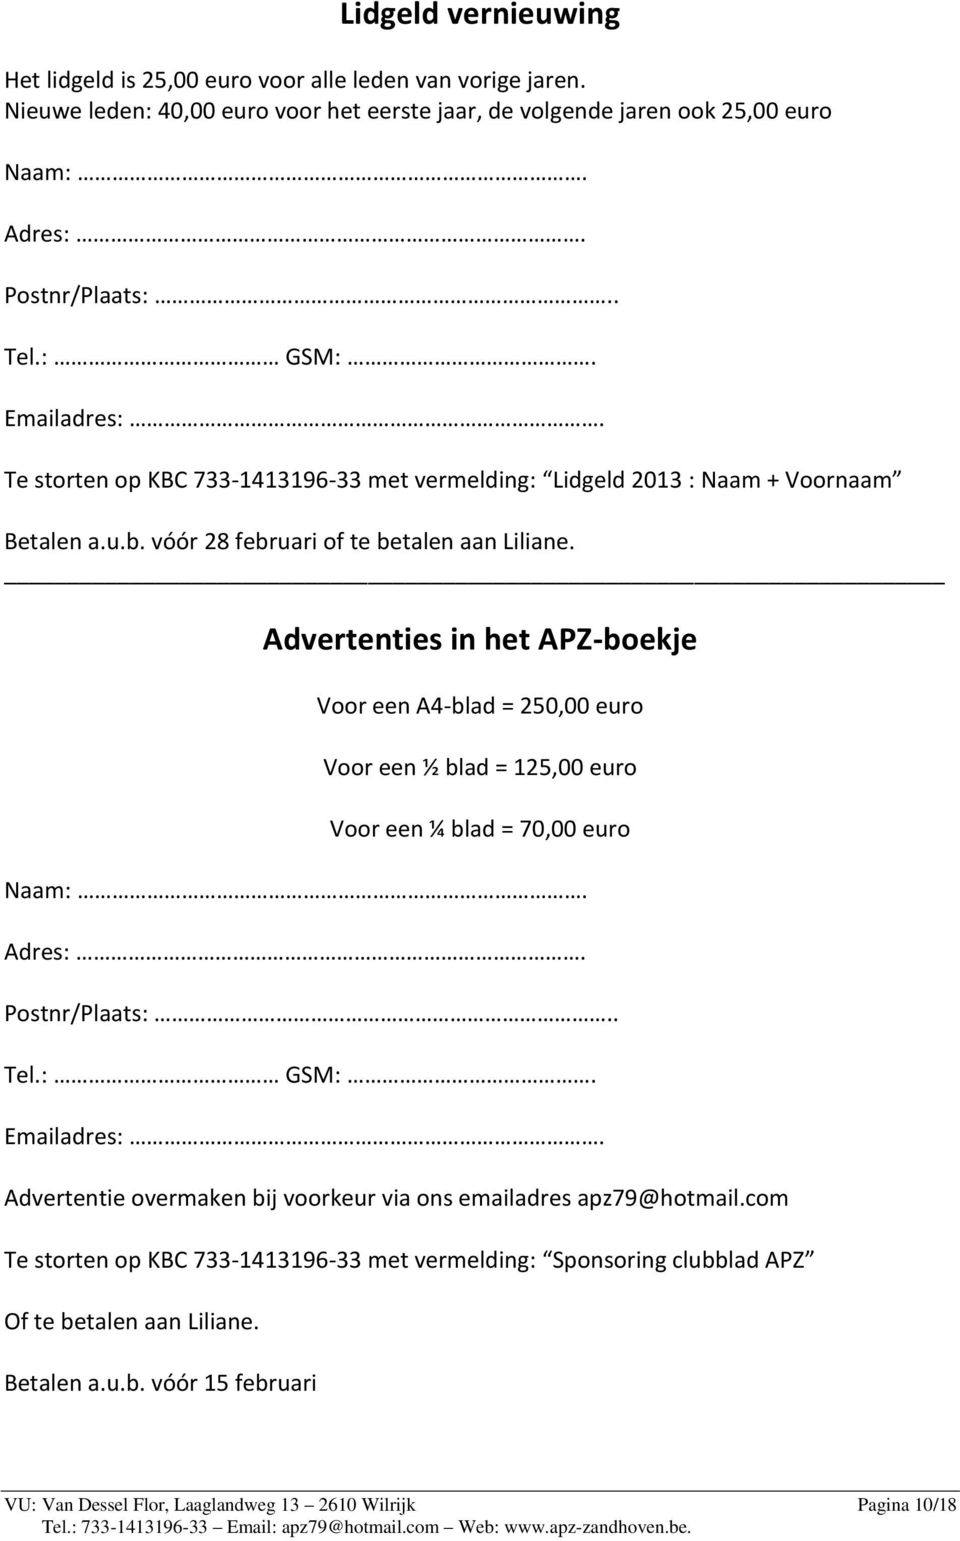 Advertenties in het APZ-boekje Voor een A4-blad = 250,00 euro Voor een ½ blad = 125,00 euro Voor een ¼ blad = 70,00 euro Naam:. Adres:. Postnr/Plaats:.. Tel.: GSM:. Emailadres:.